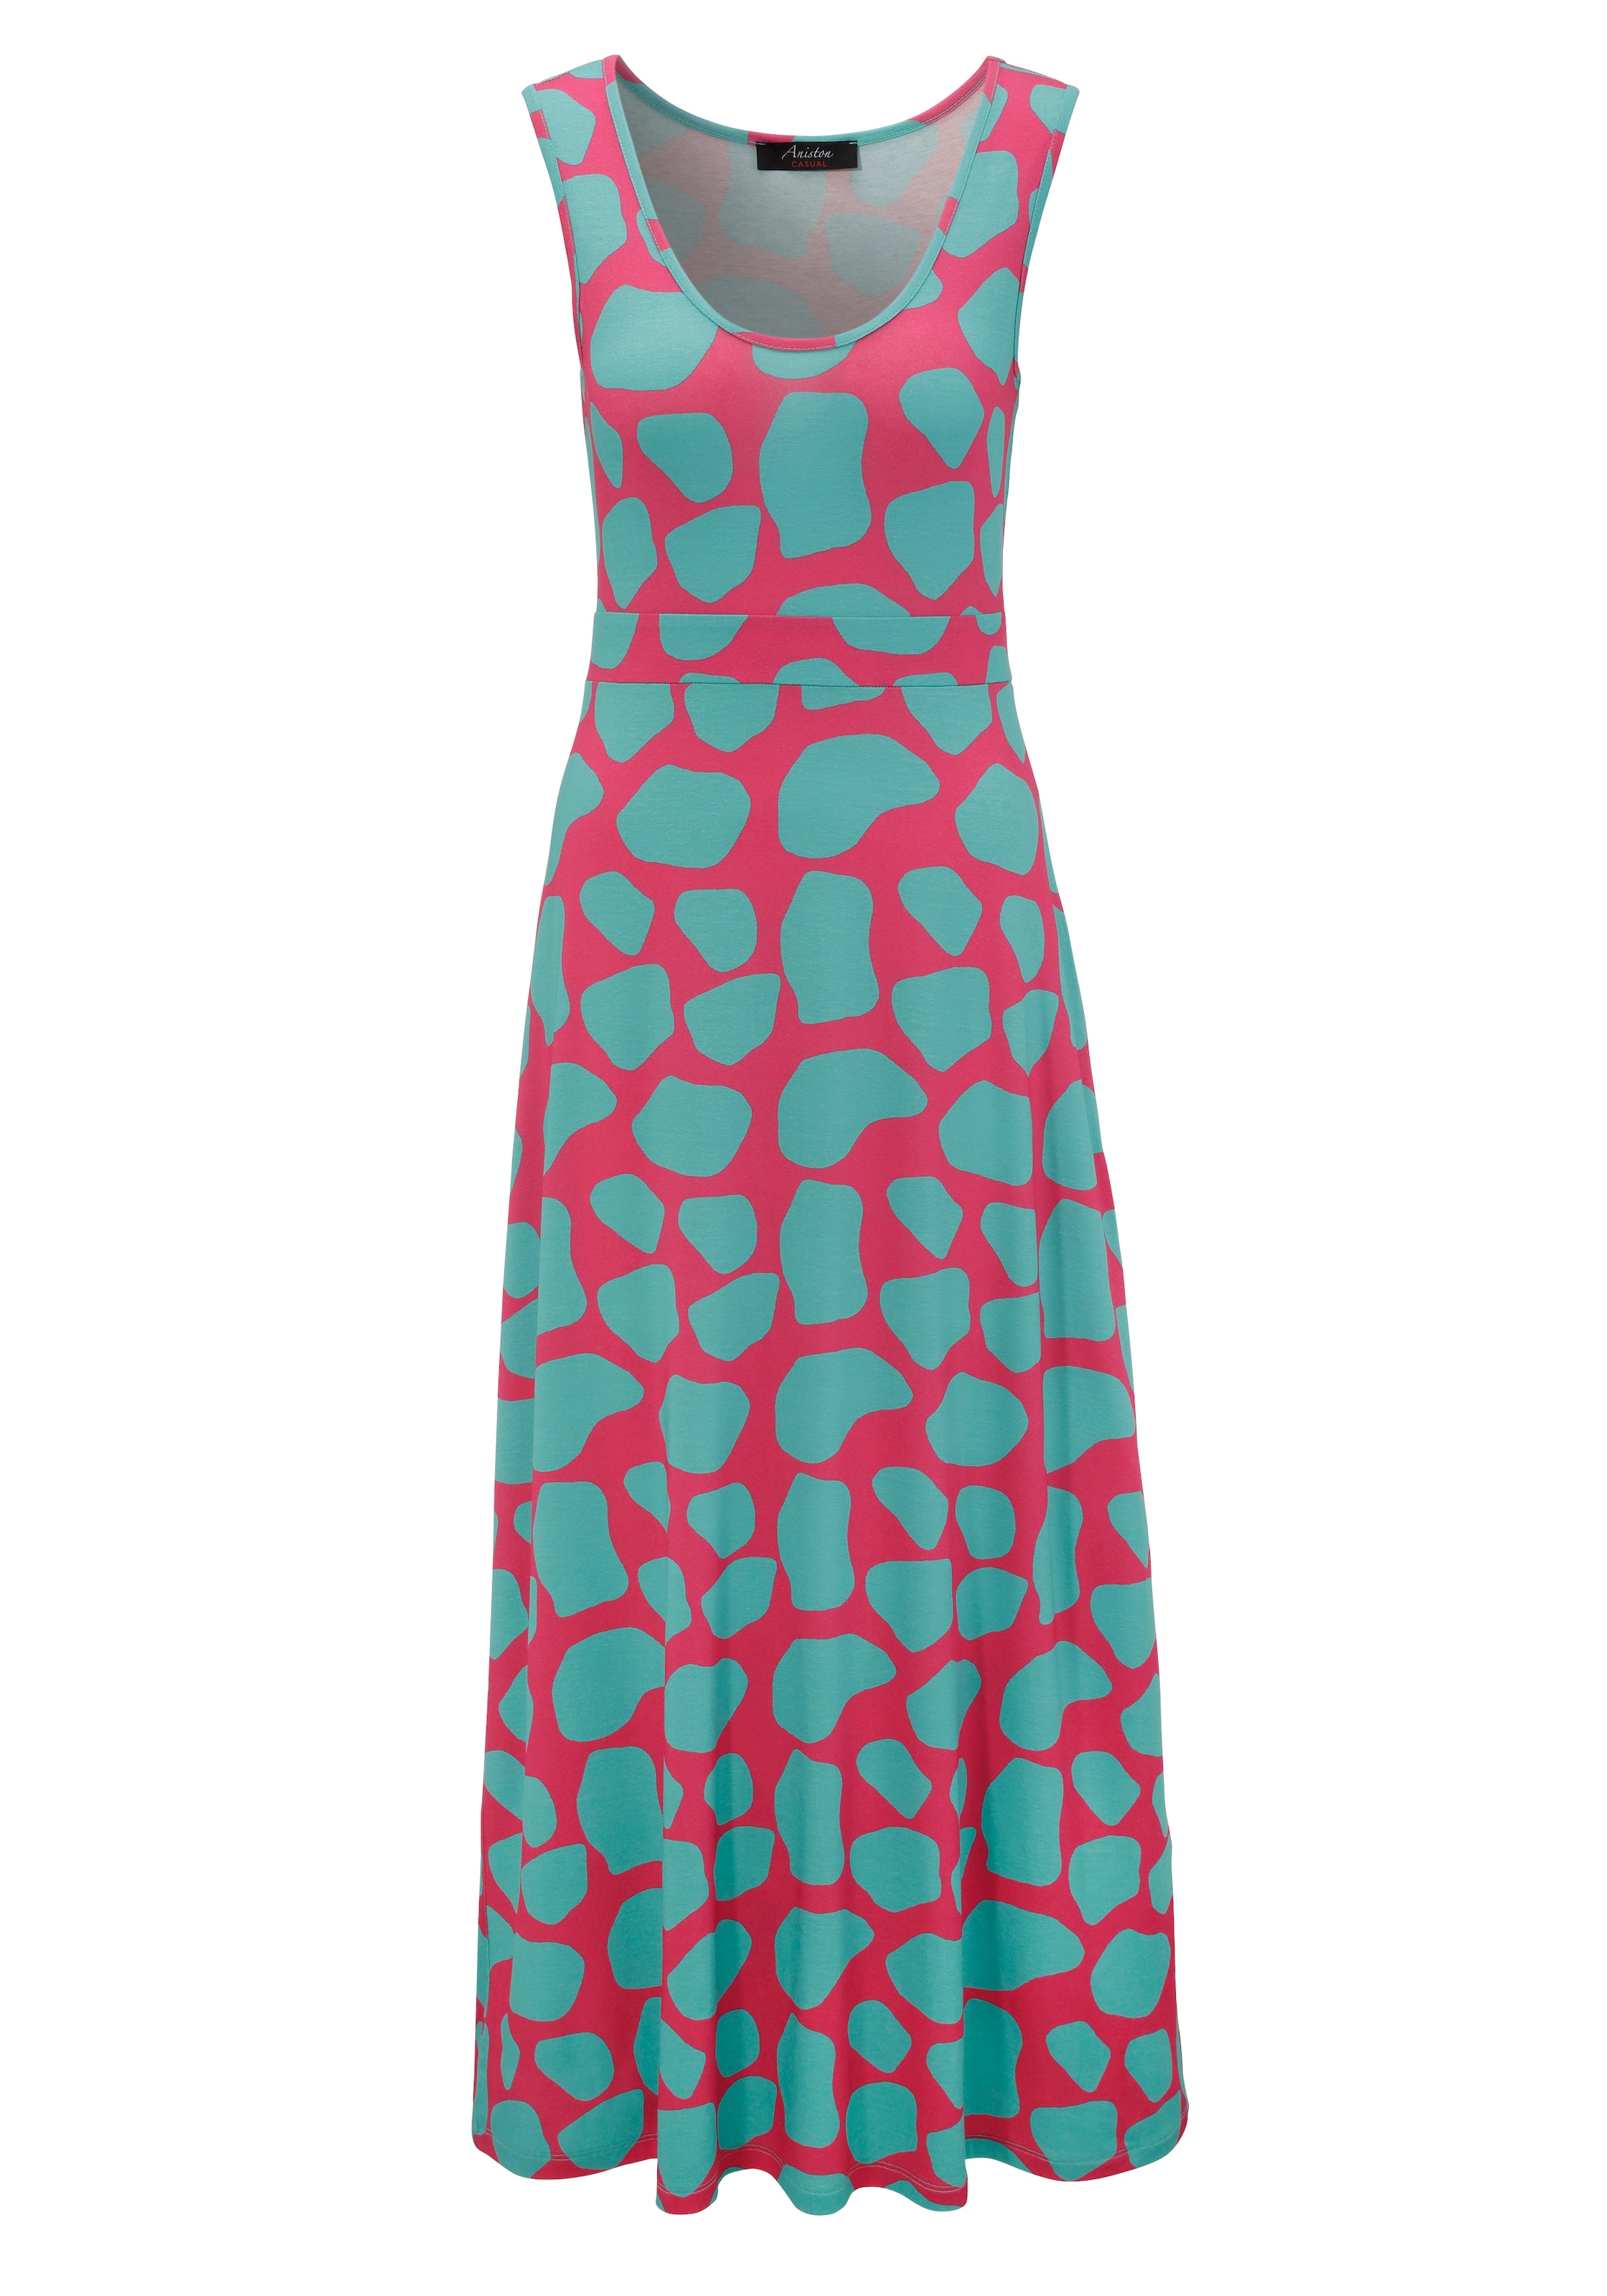 Aniston farbintensivem Sommerkleid, CASUAL extravagantem, shoppen mit Druck